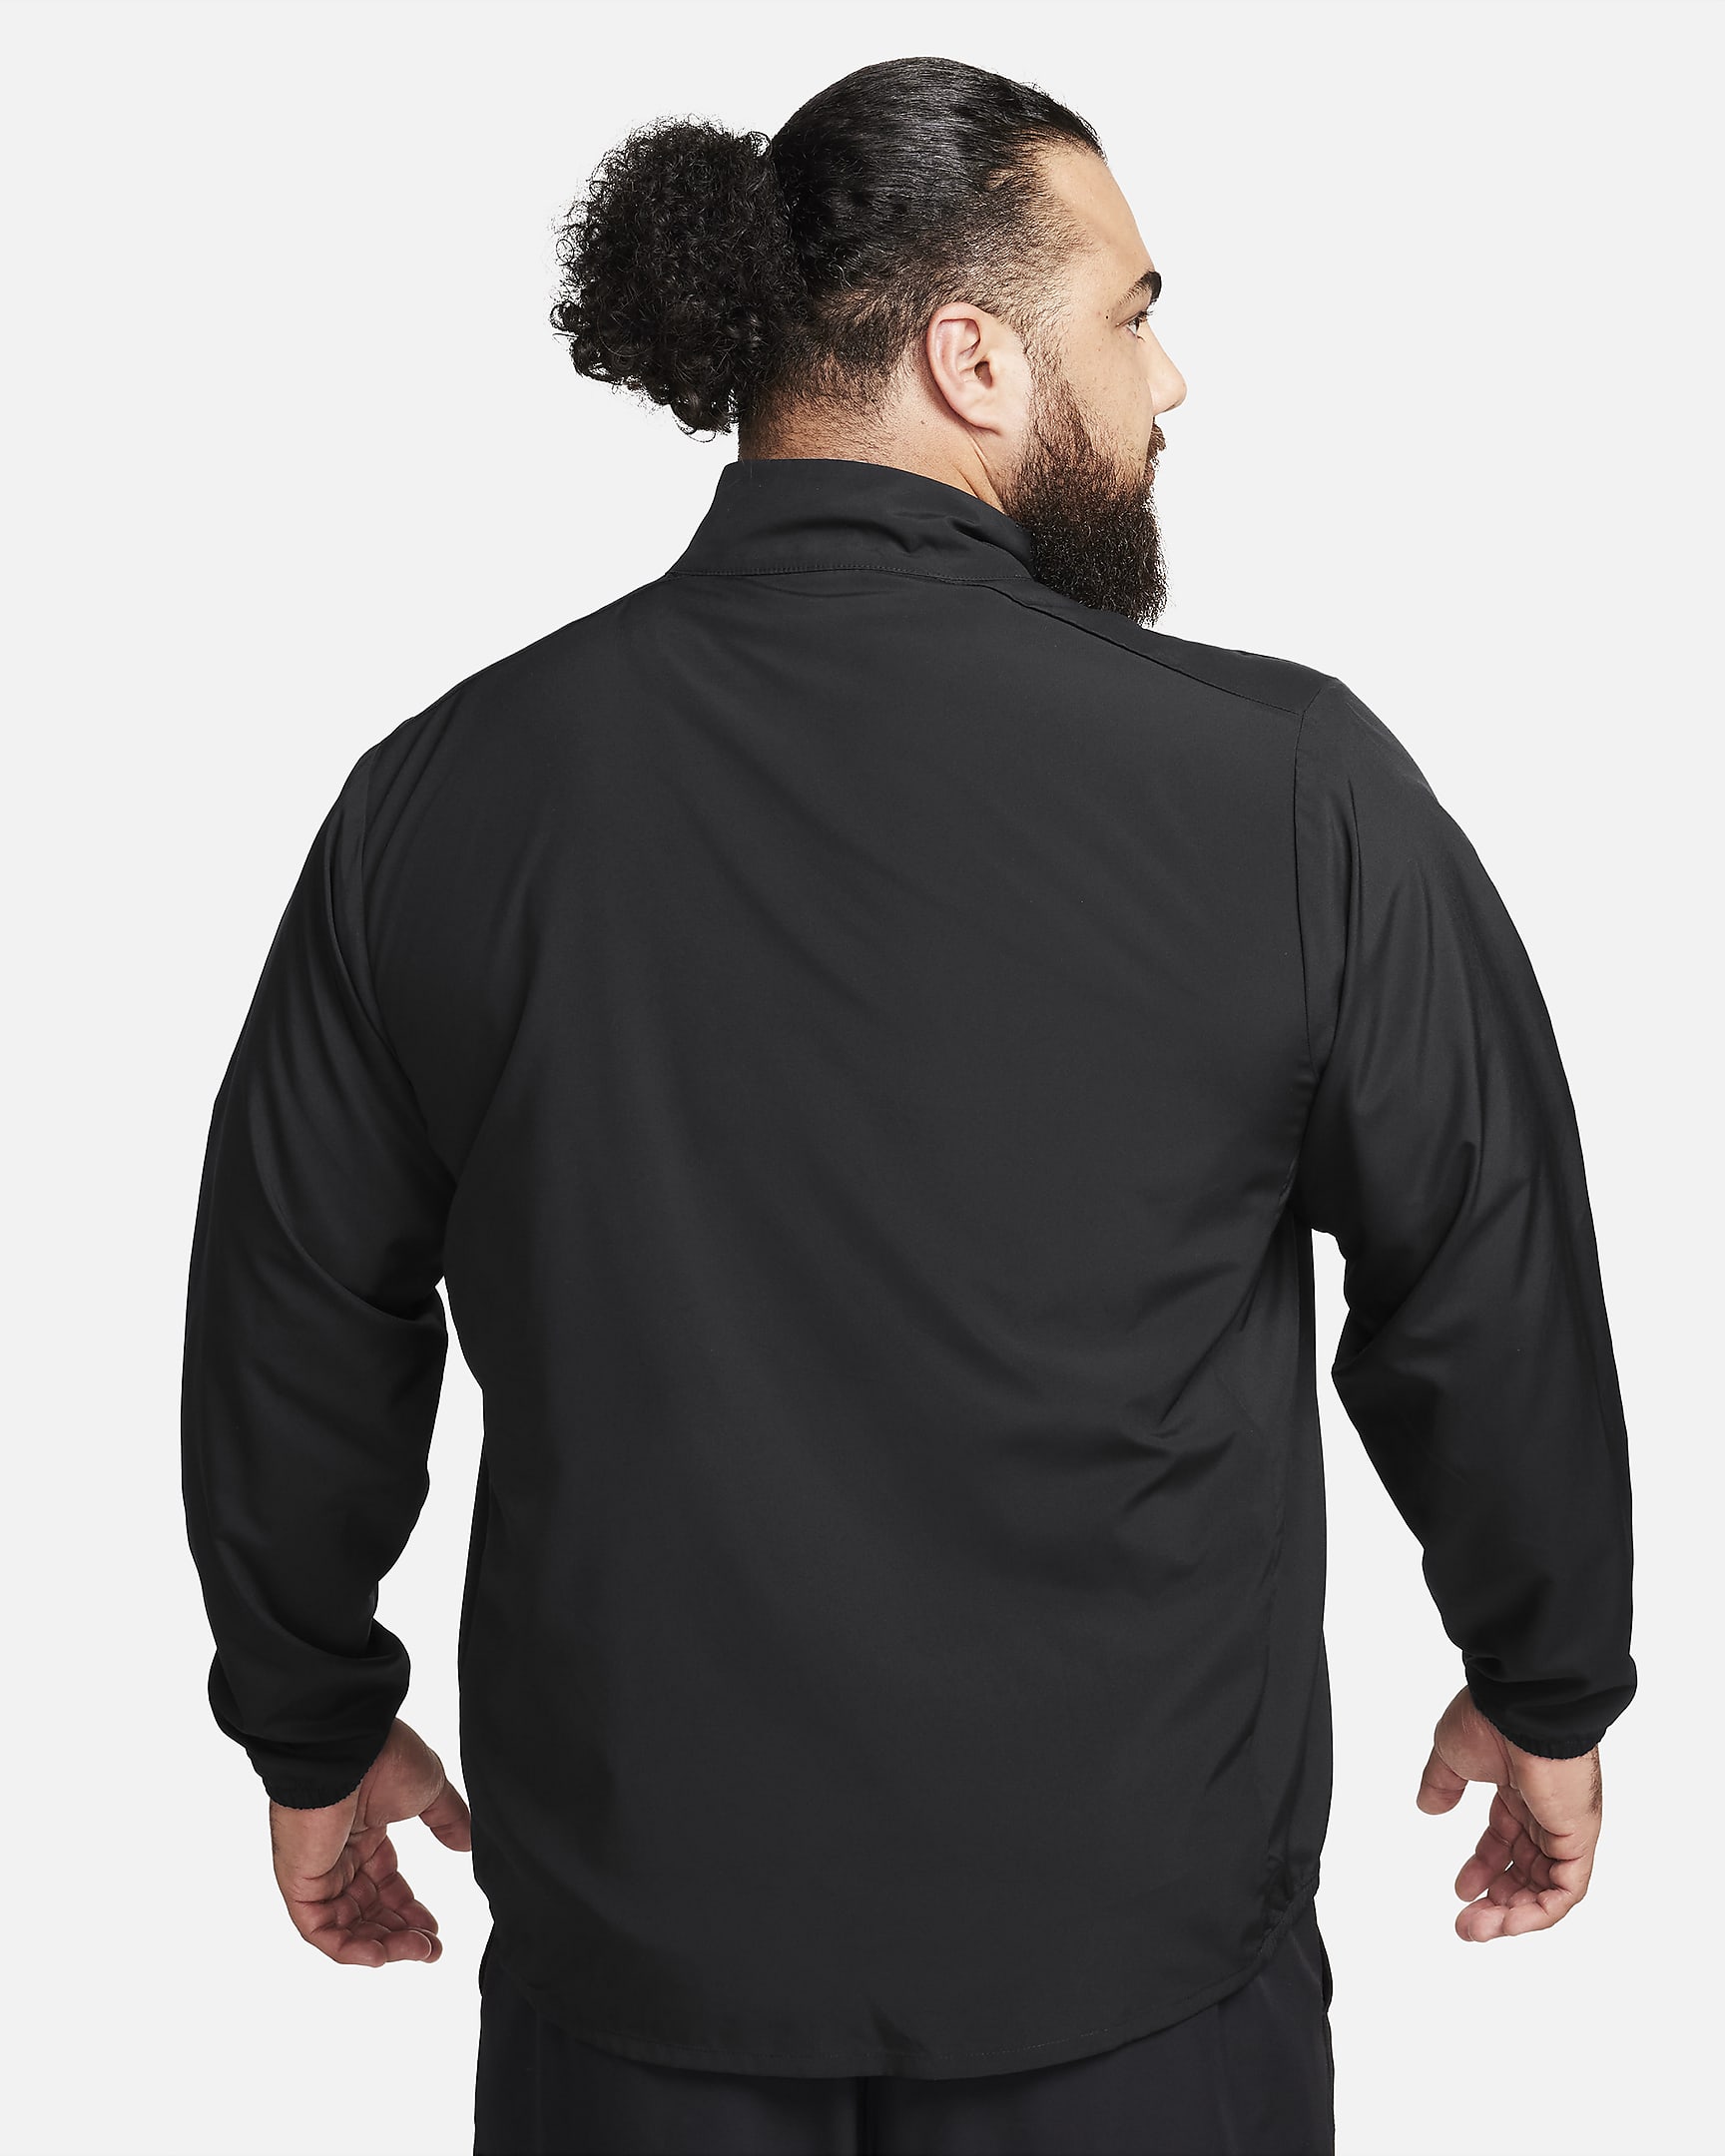 Nike Form vielseitige Dri-FIT Jacke für Herren - Schwarz